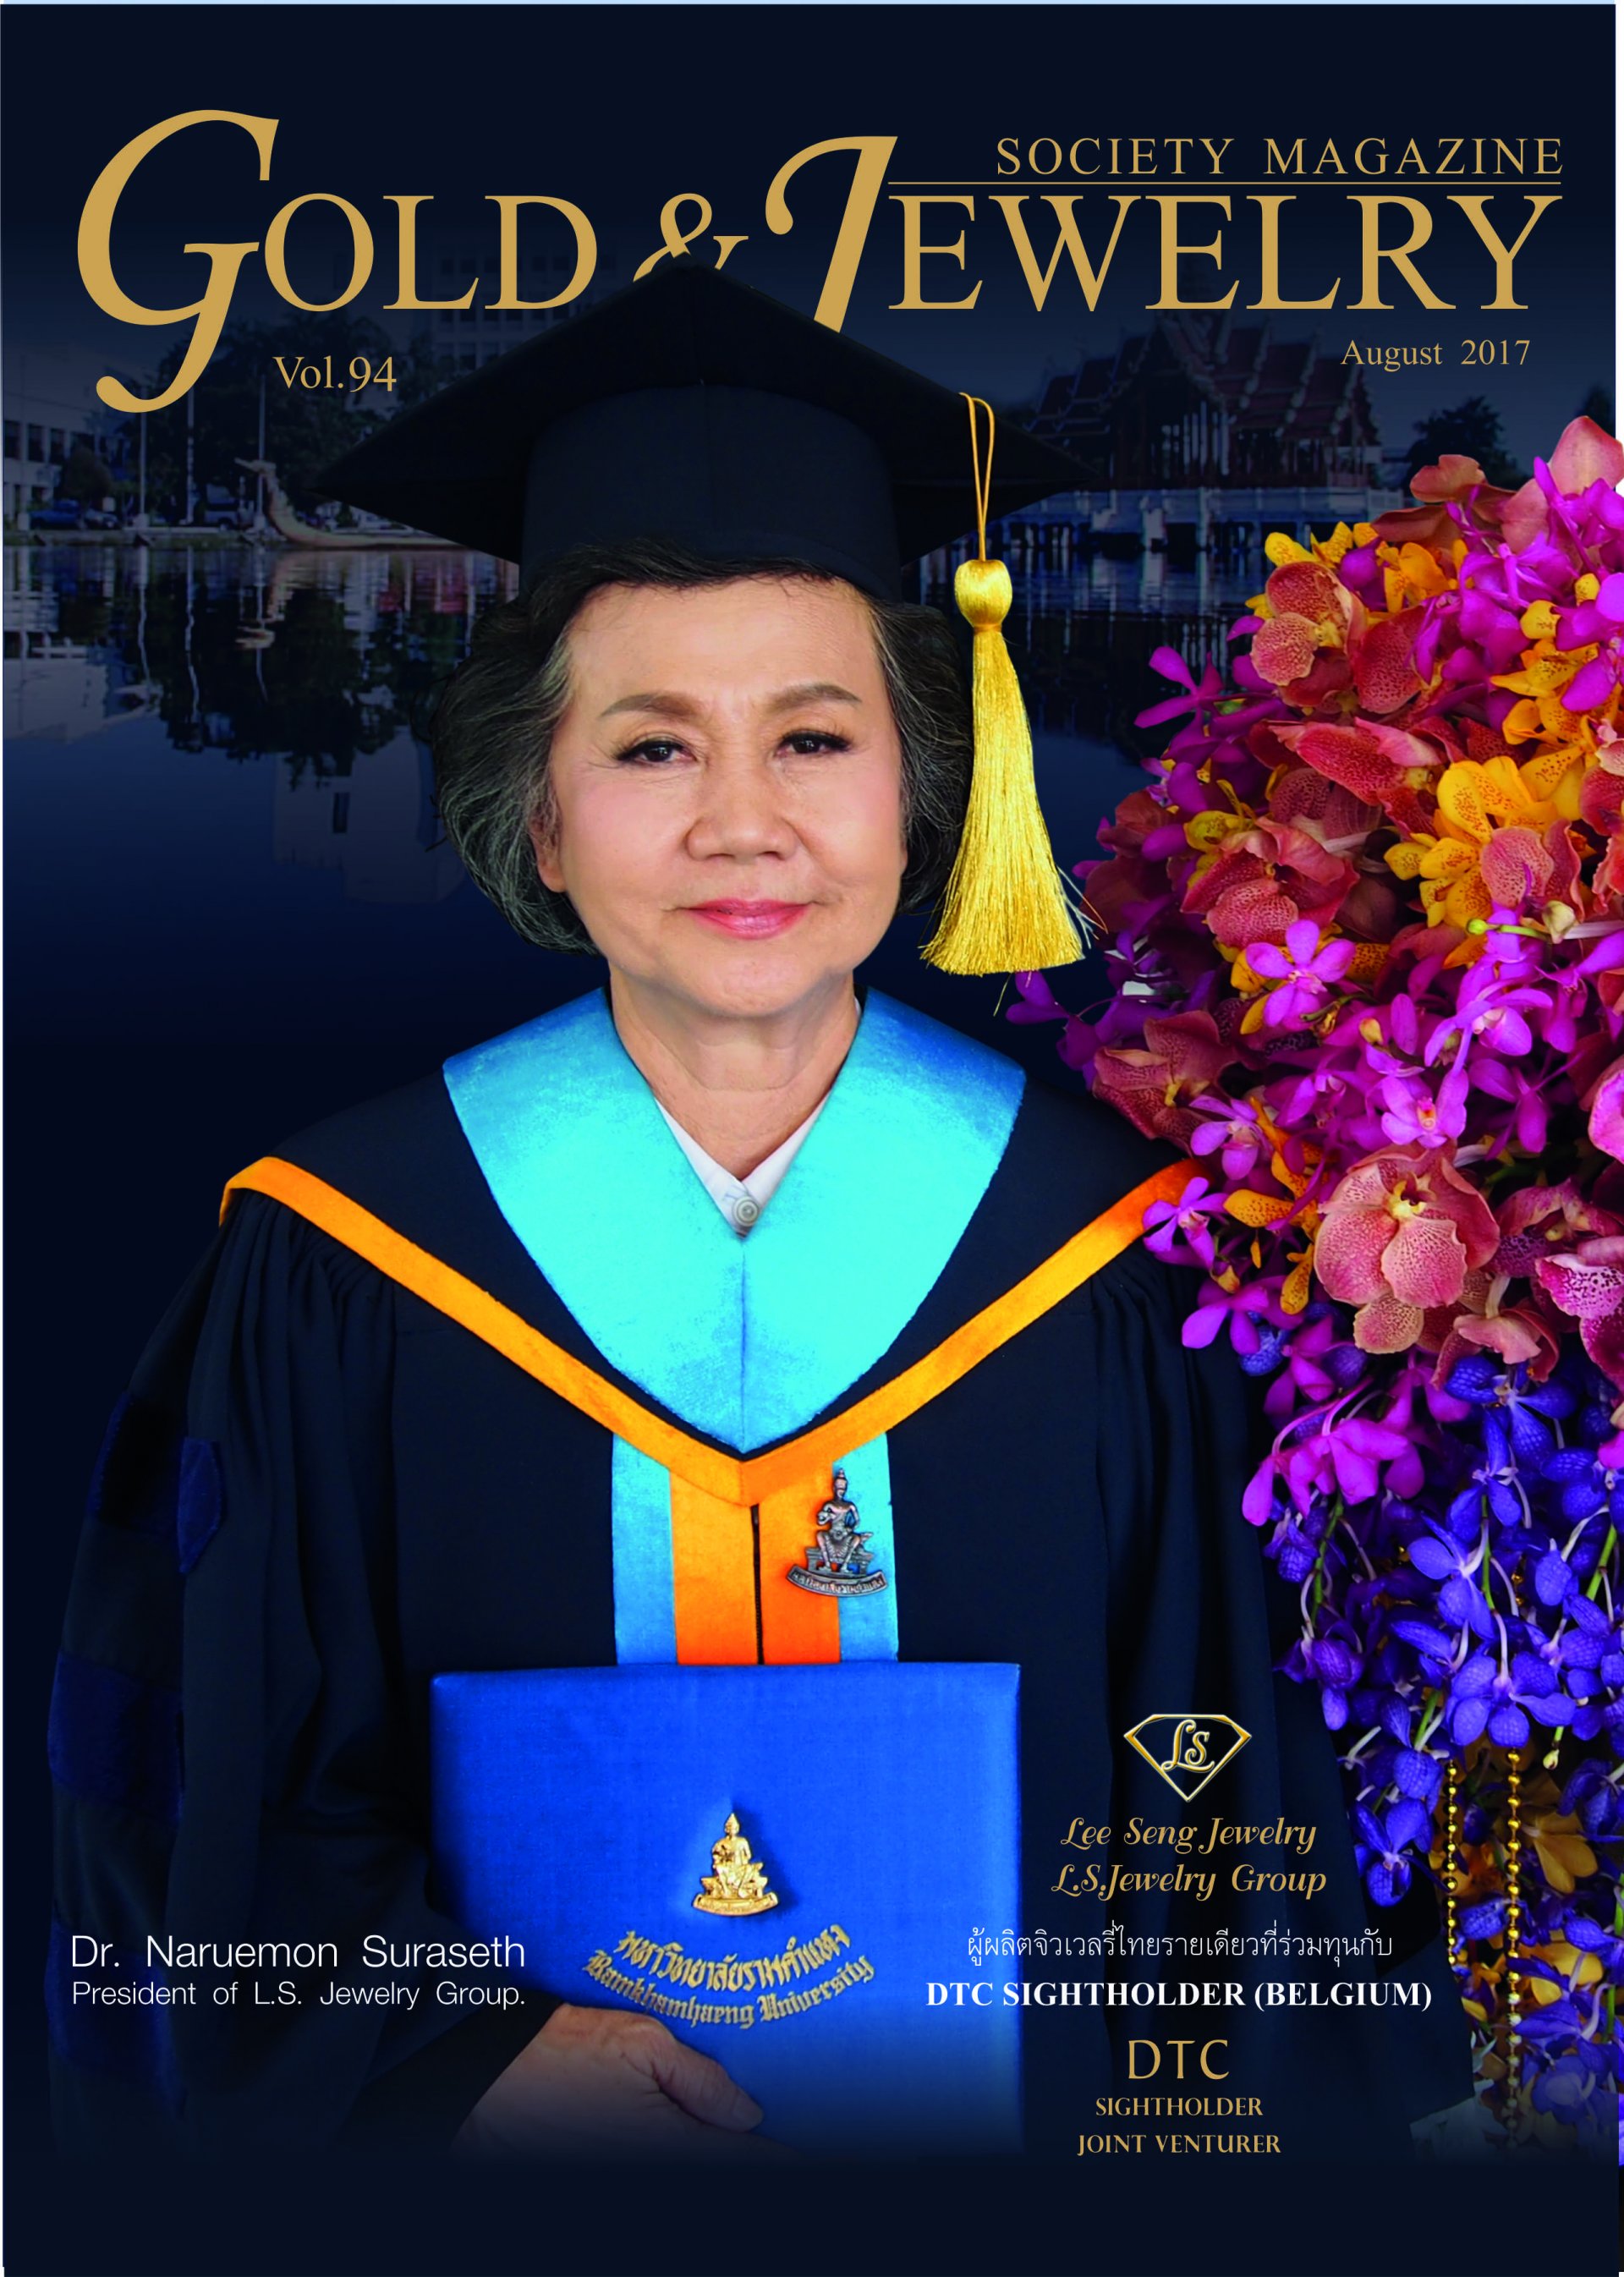 ดร.นฤมล สุรเศรษฐ (President กลุ่ม L.S. Jewelry Group) หนังสือ Gold & Jewelry Society สัมภาษณ์พิเศษประวัติห้างเพชรหลีเสง ประจำเดือนสิงหาคม 2560